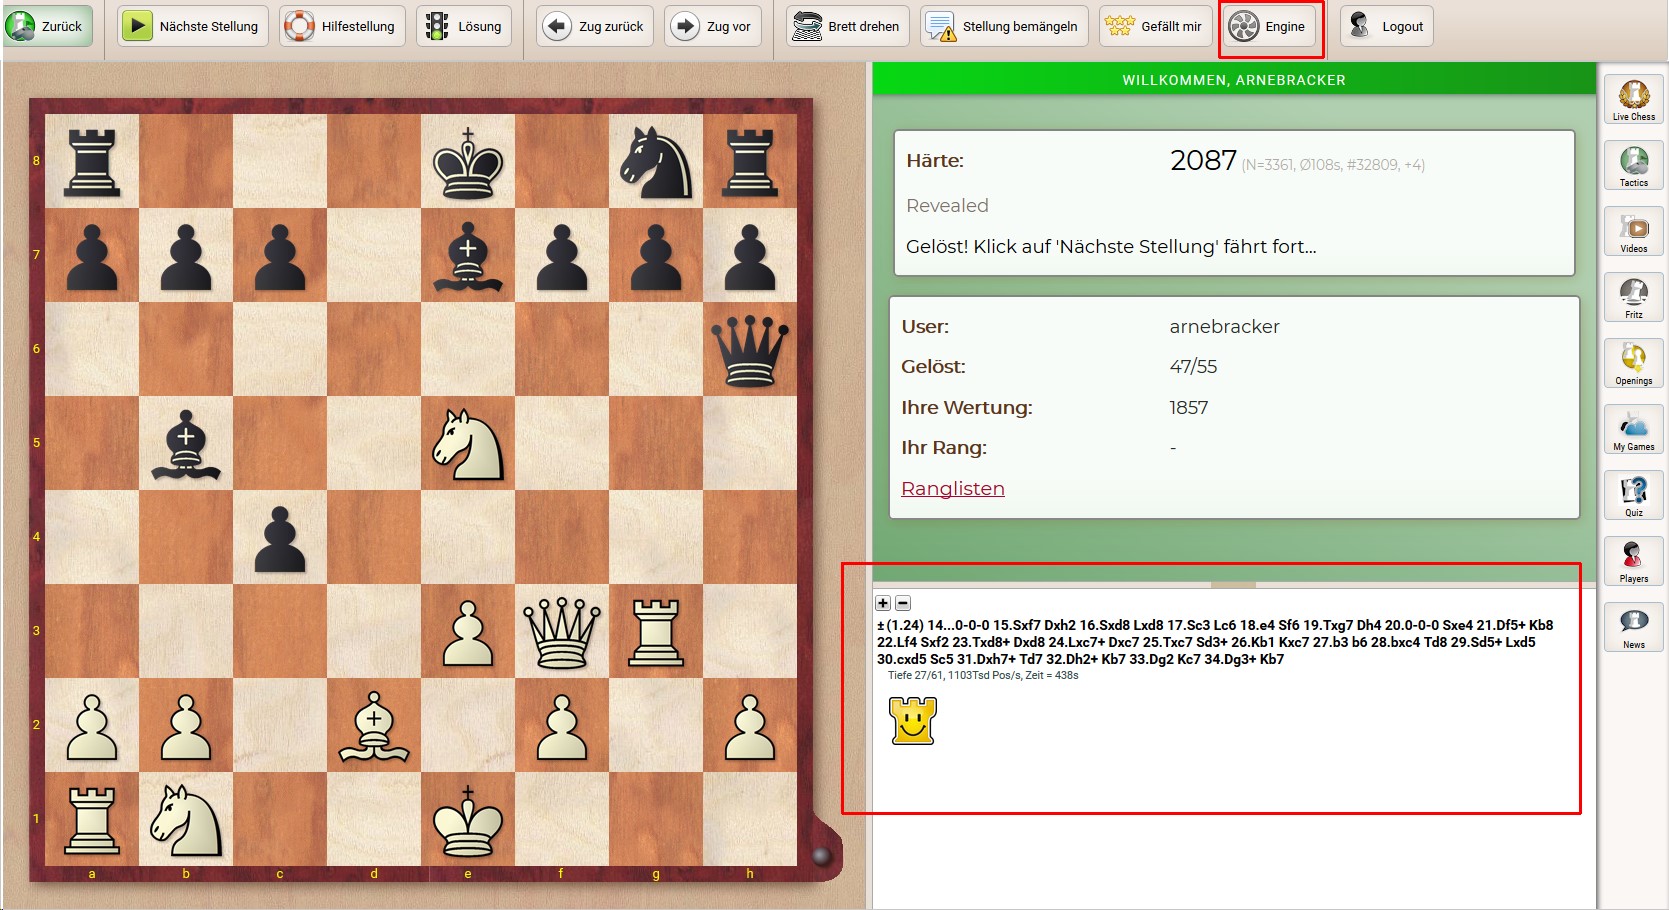 schach lernen und online spielen bei chessbase